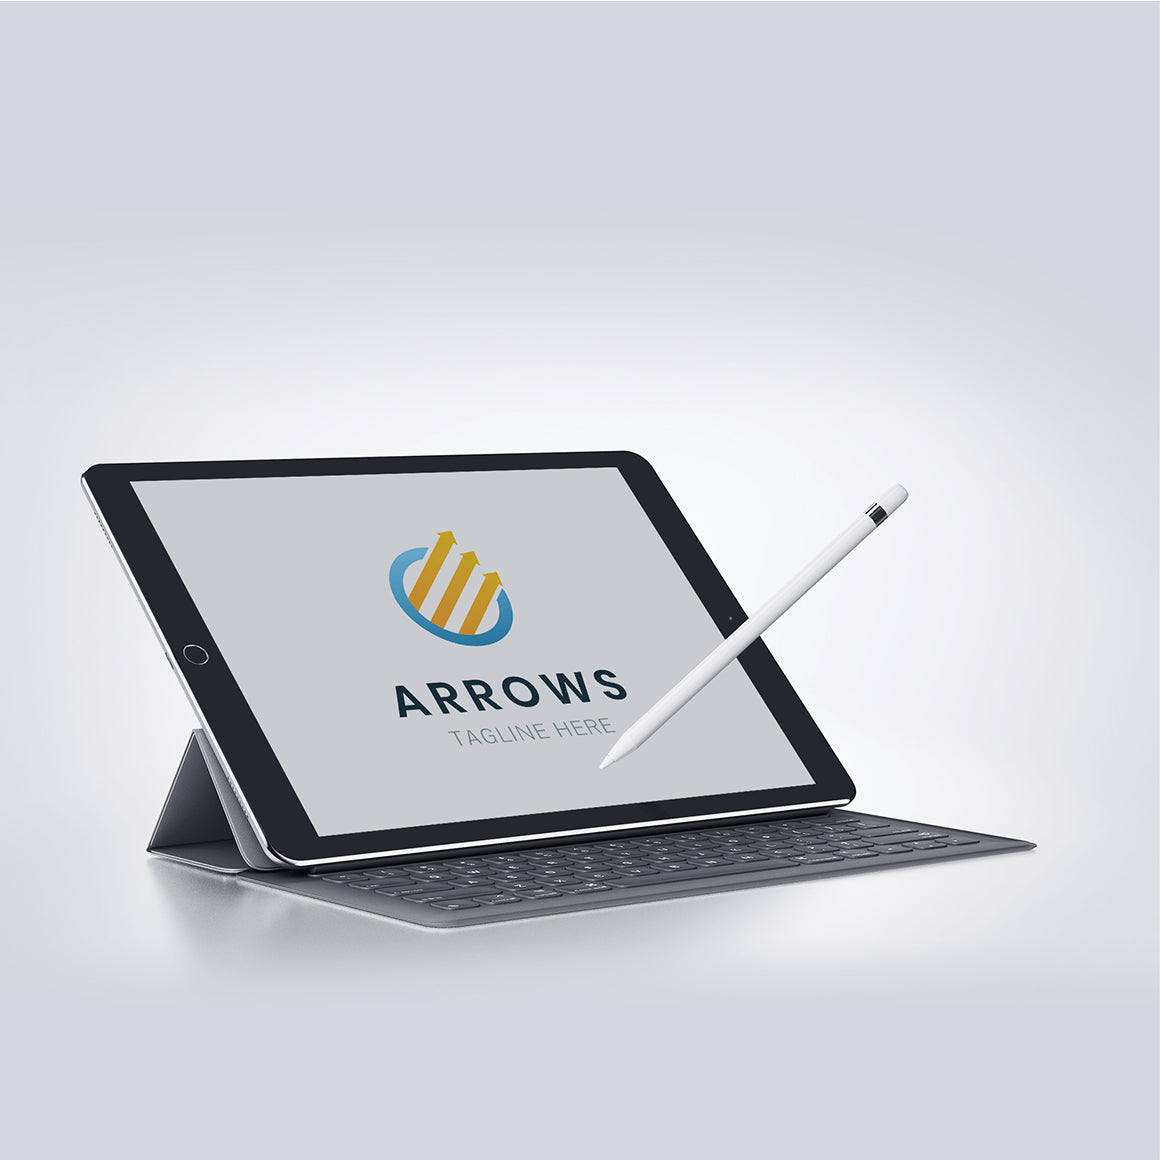 Arrows creative logo